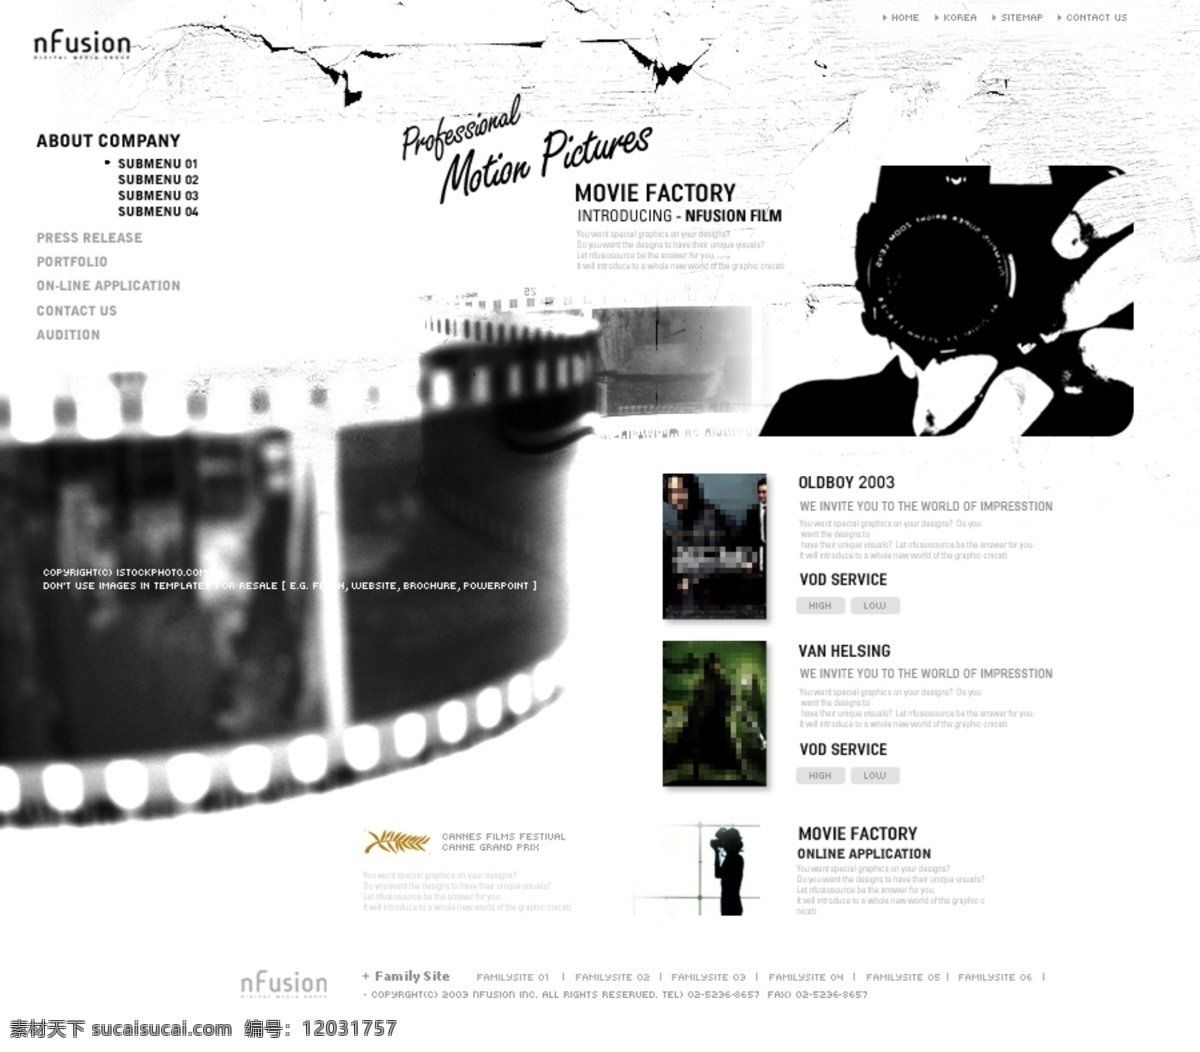 欧美电影 发行 网站 模板 欧美 欧美风格 相机 电影发行 网页素材 网页模板